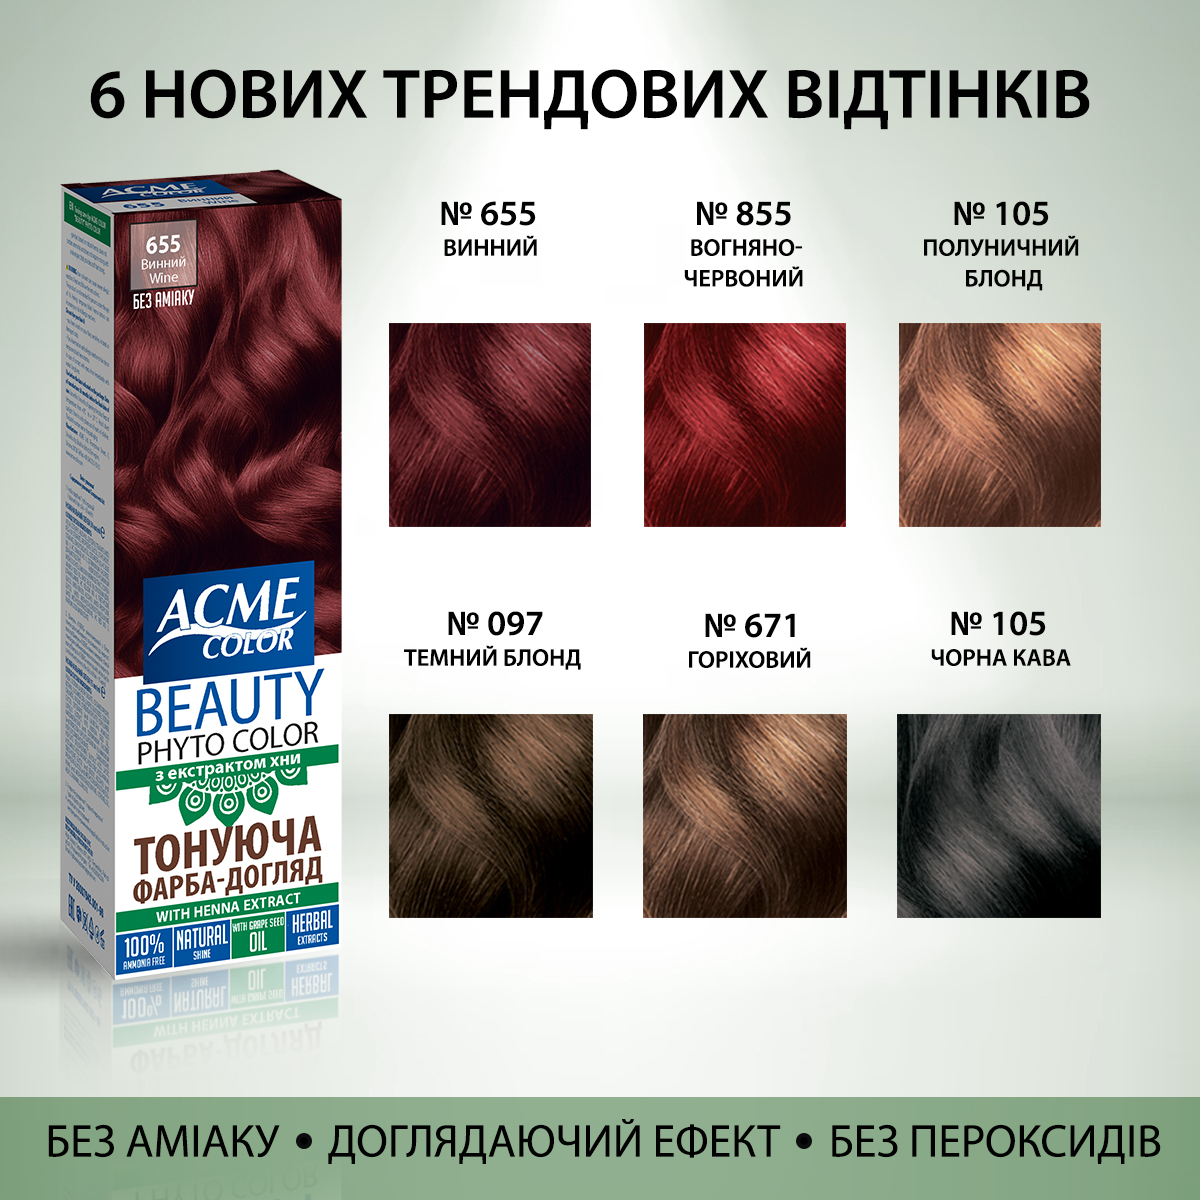 Гель-краска Acme Color Beauty Phyto Color, тон 855, огненно-красный, 60 мл - фото 6